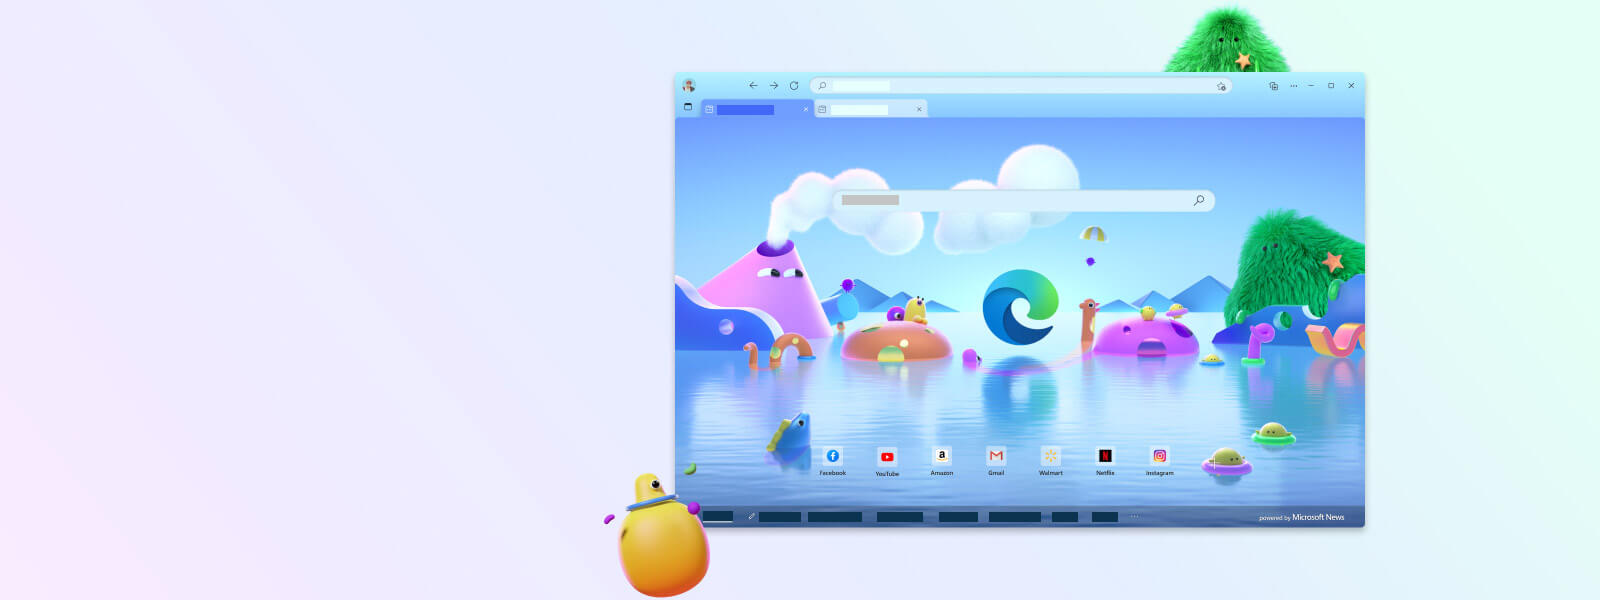 Tela do navegador Microsoft Edge com diversos personagens de desenho animado no modo Infantil